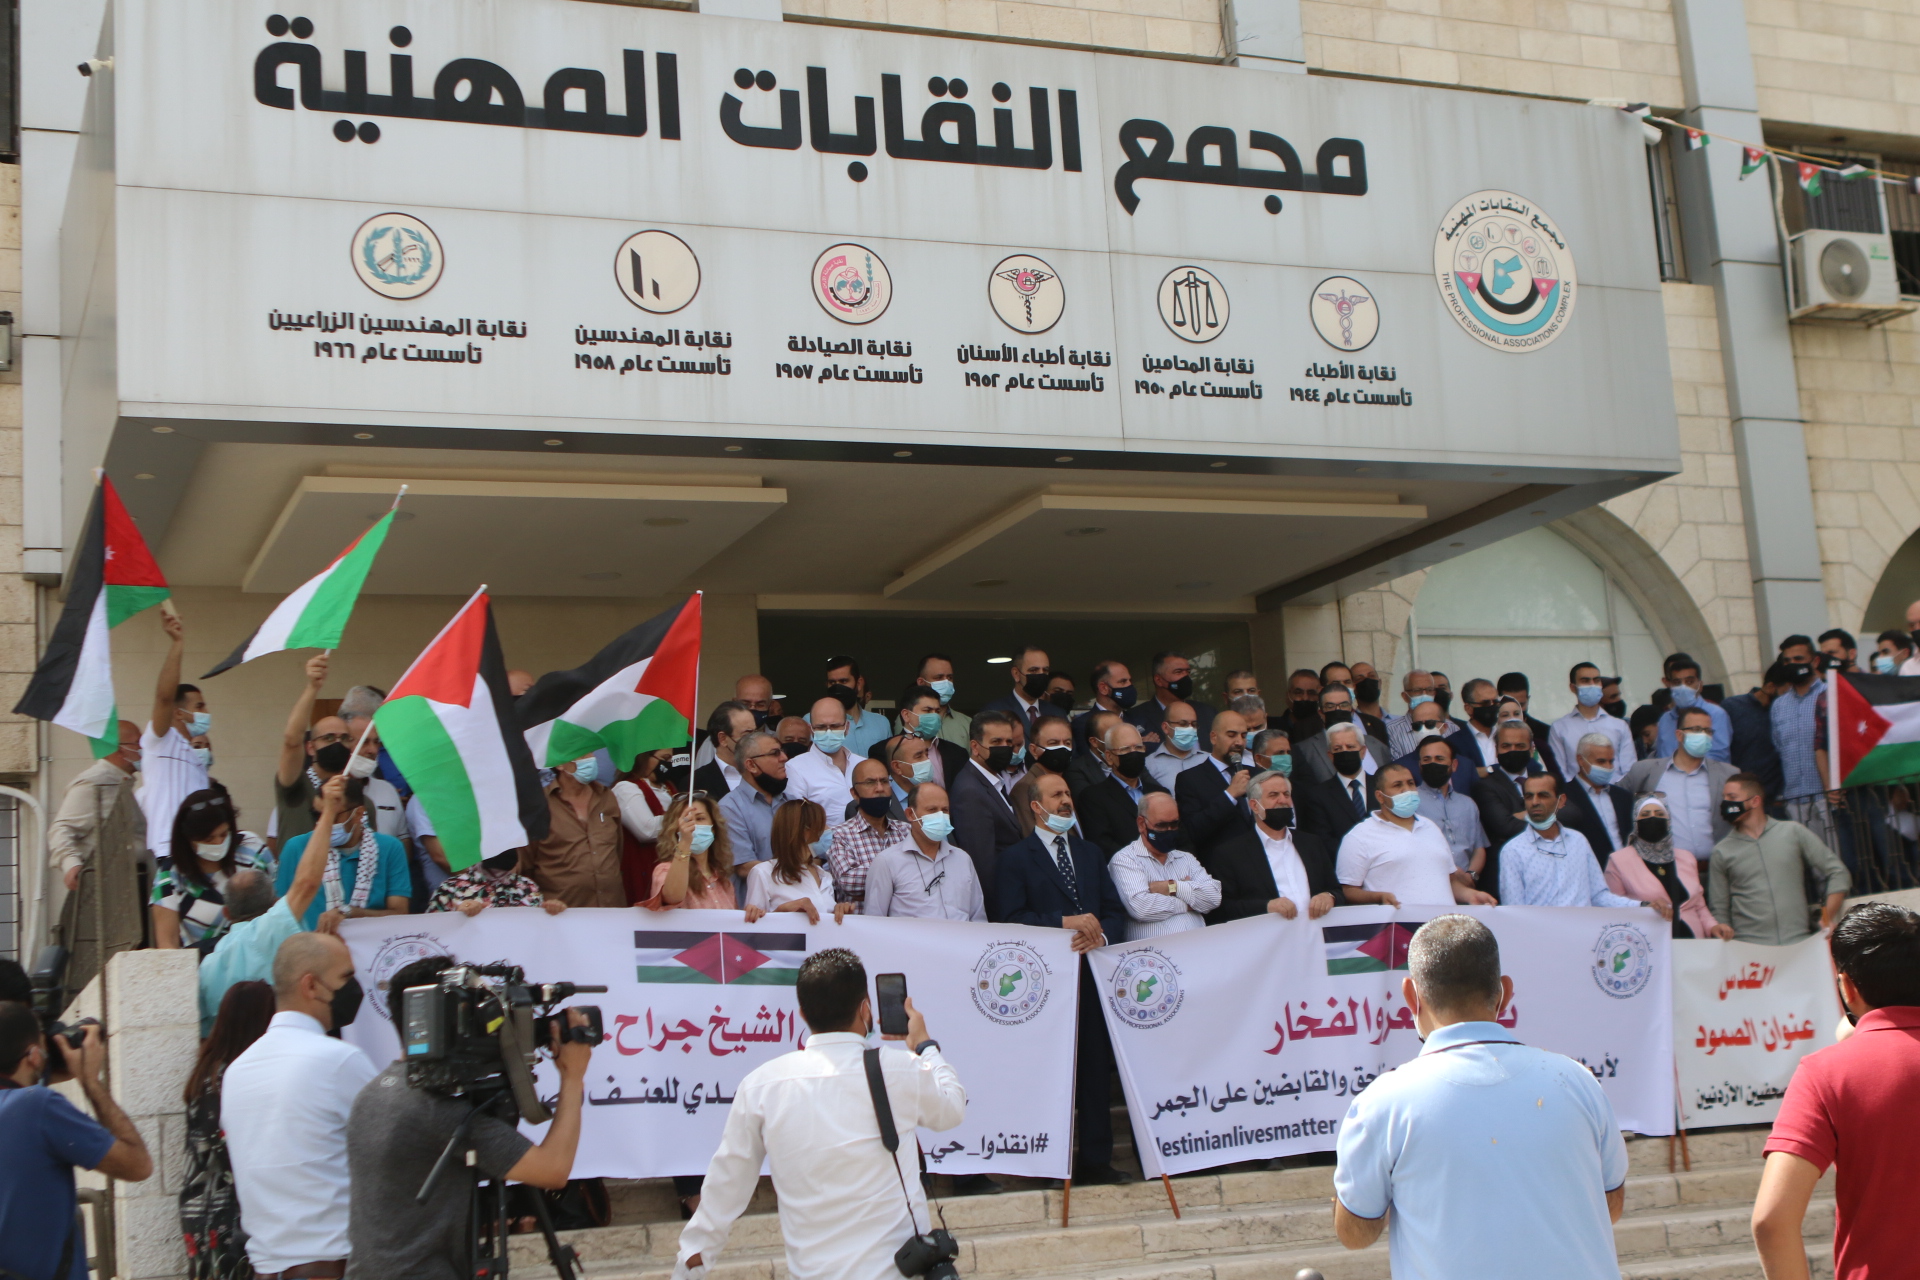 وقفة احتجاجية في مجمع النقابات المهنية في عمّان تنديدا بالاعتداءات الإسرائيلية على القدس. (صلاح ملكاوي/ المملكة)